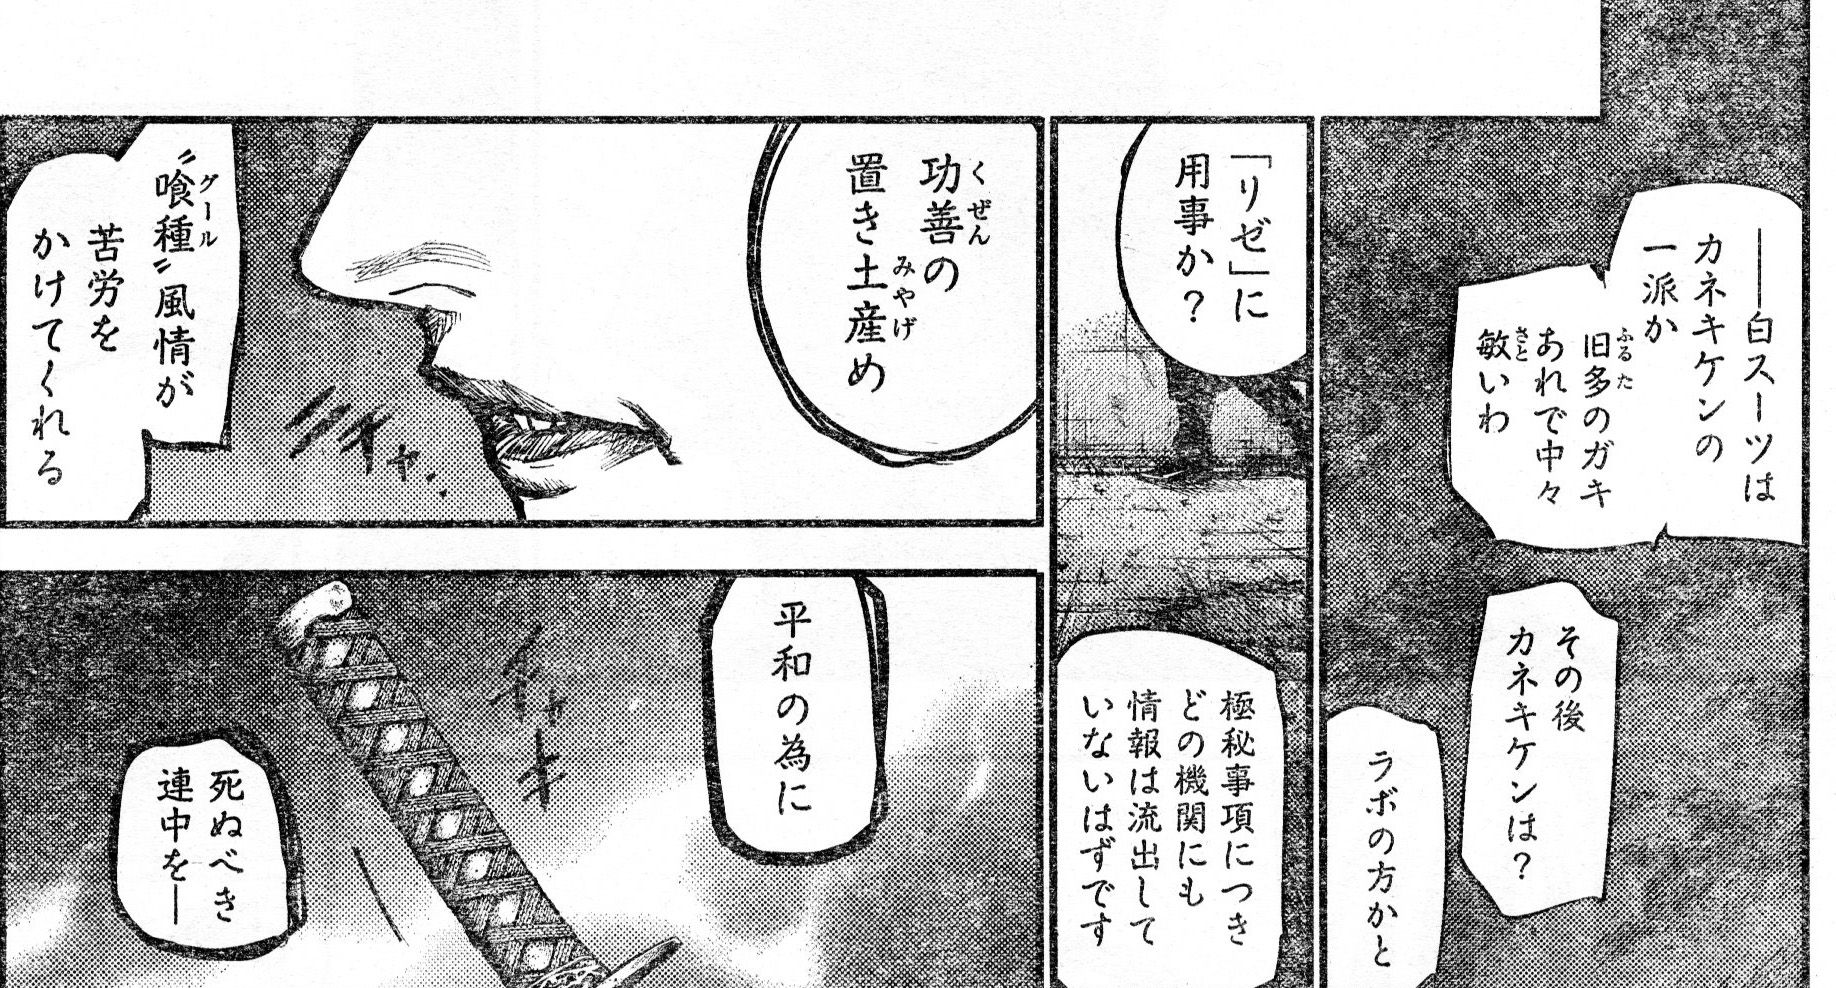 東京喰種 Re 112話感想 リゼ すでに旧多に捕まっていた 画像 最強ジャンプ放送局